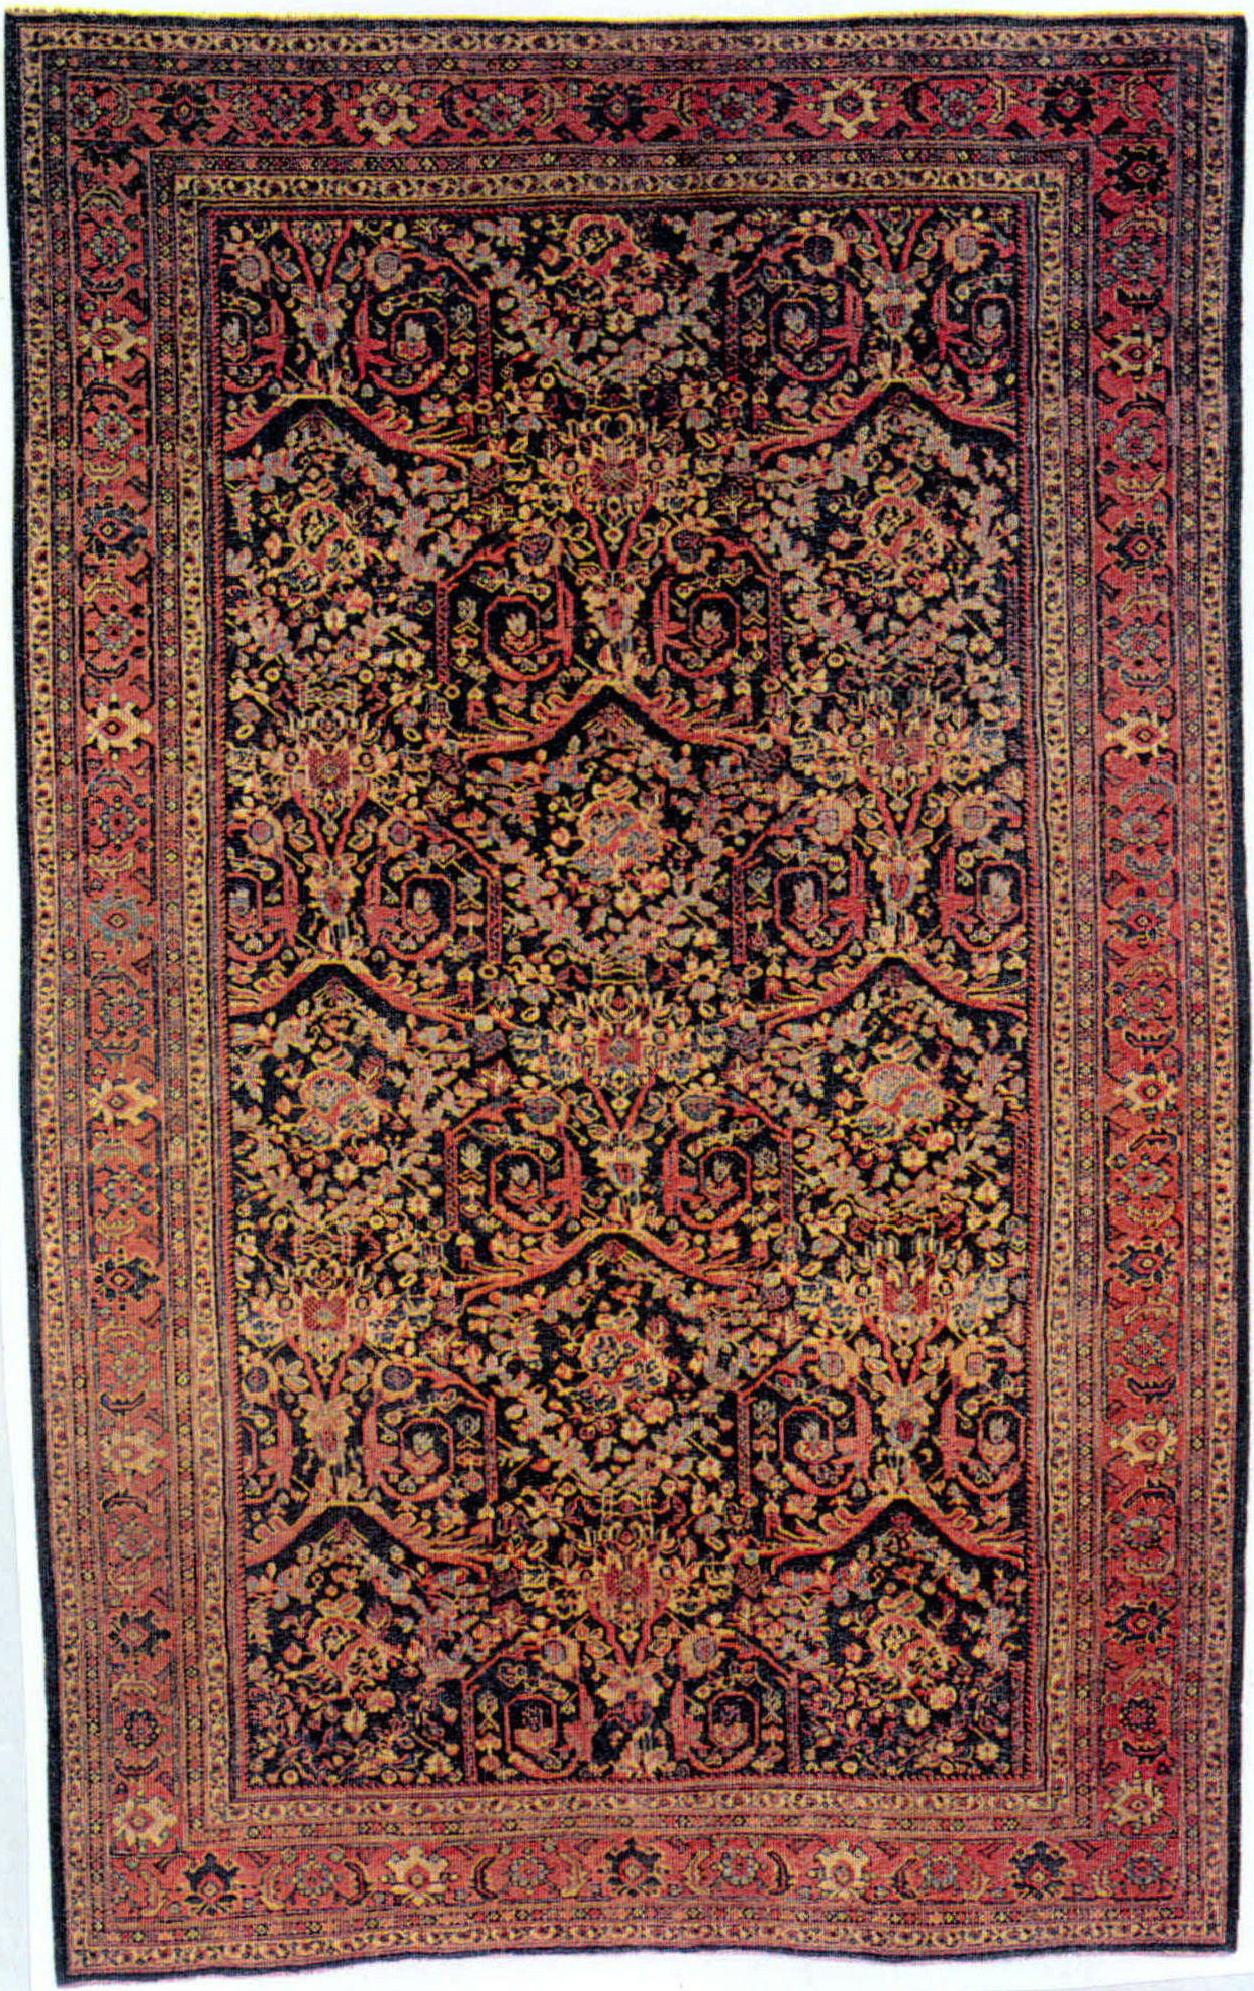 1890年 此地毯采用欧式花朵，但深色调还是波斯模式